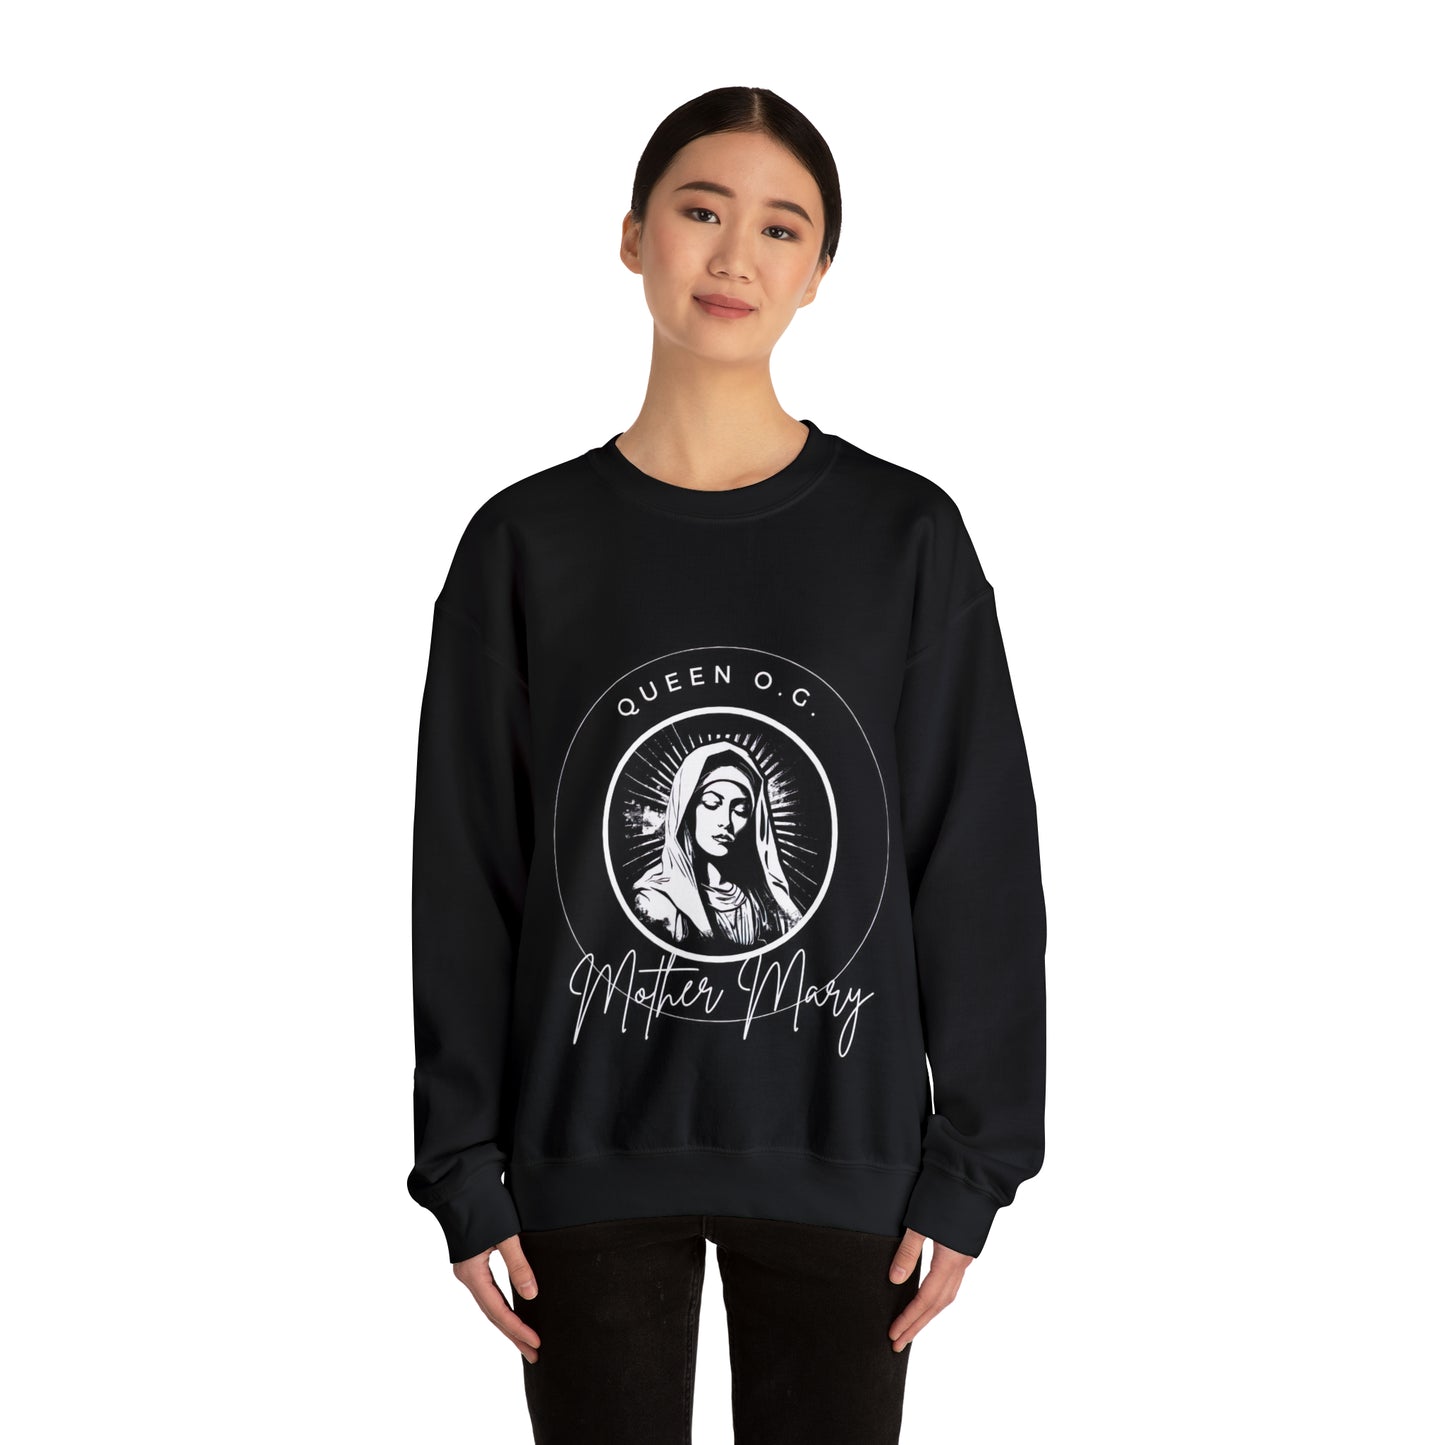 "Mother Mary: The Queen O.G -  Crewneck Sweatshirt - Men